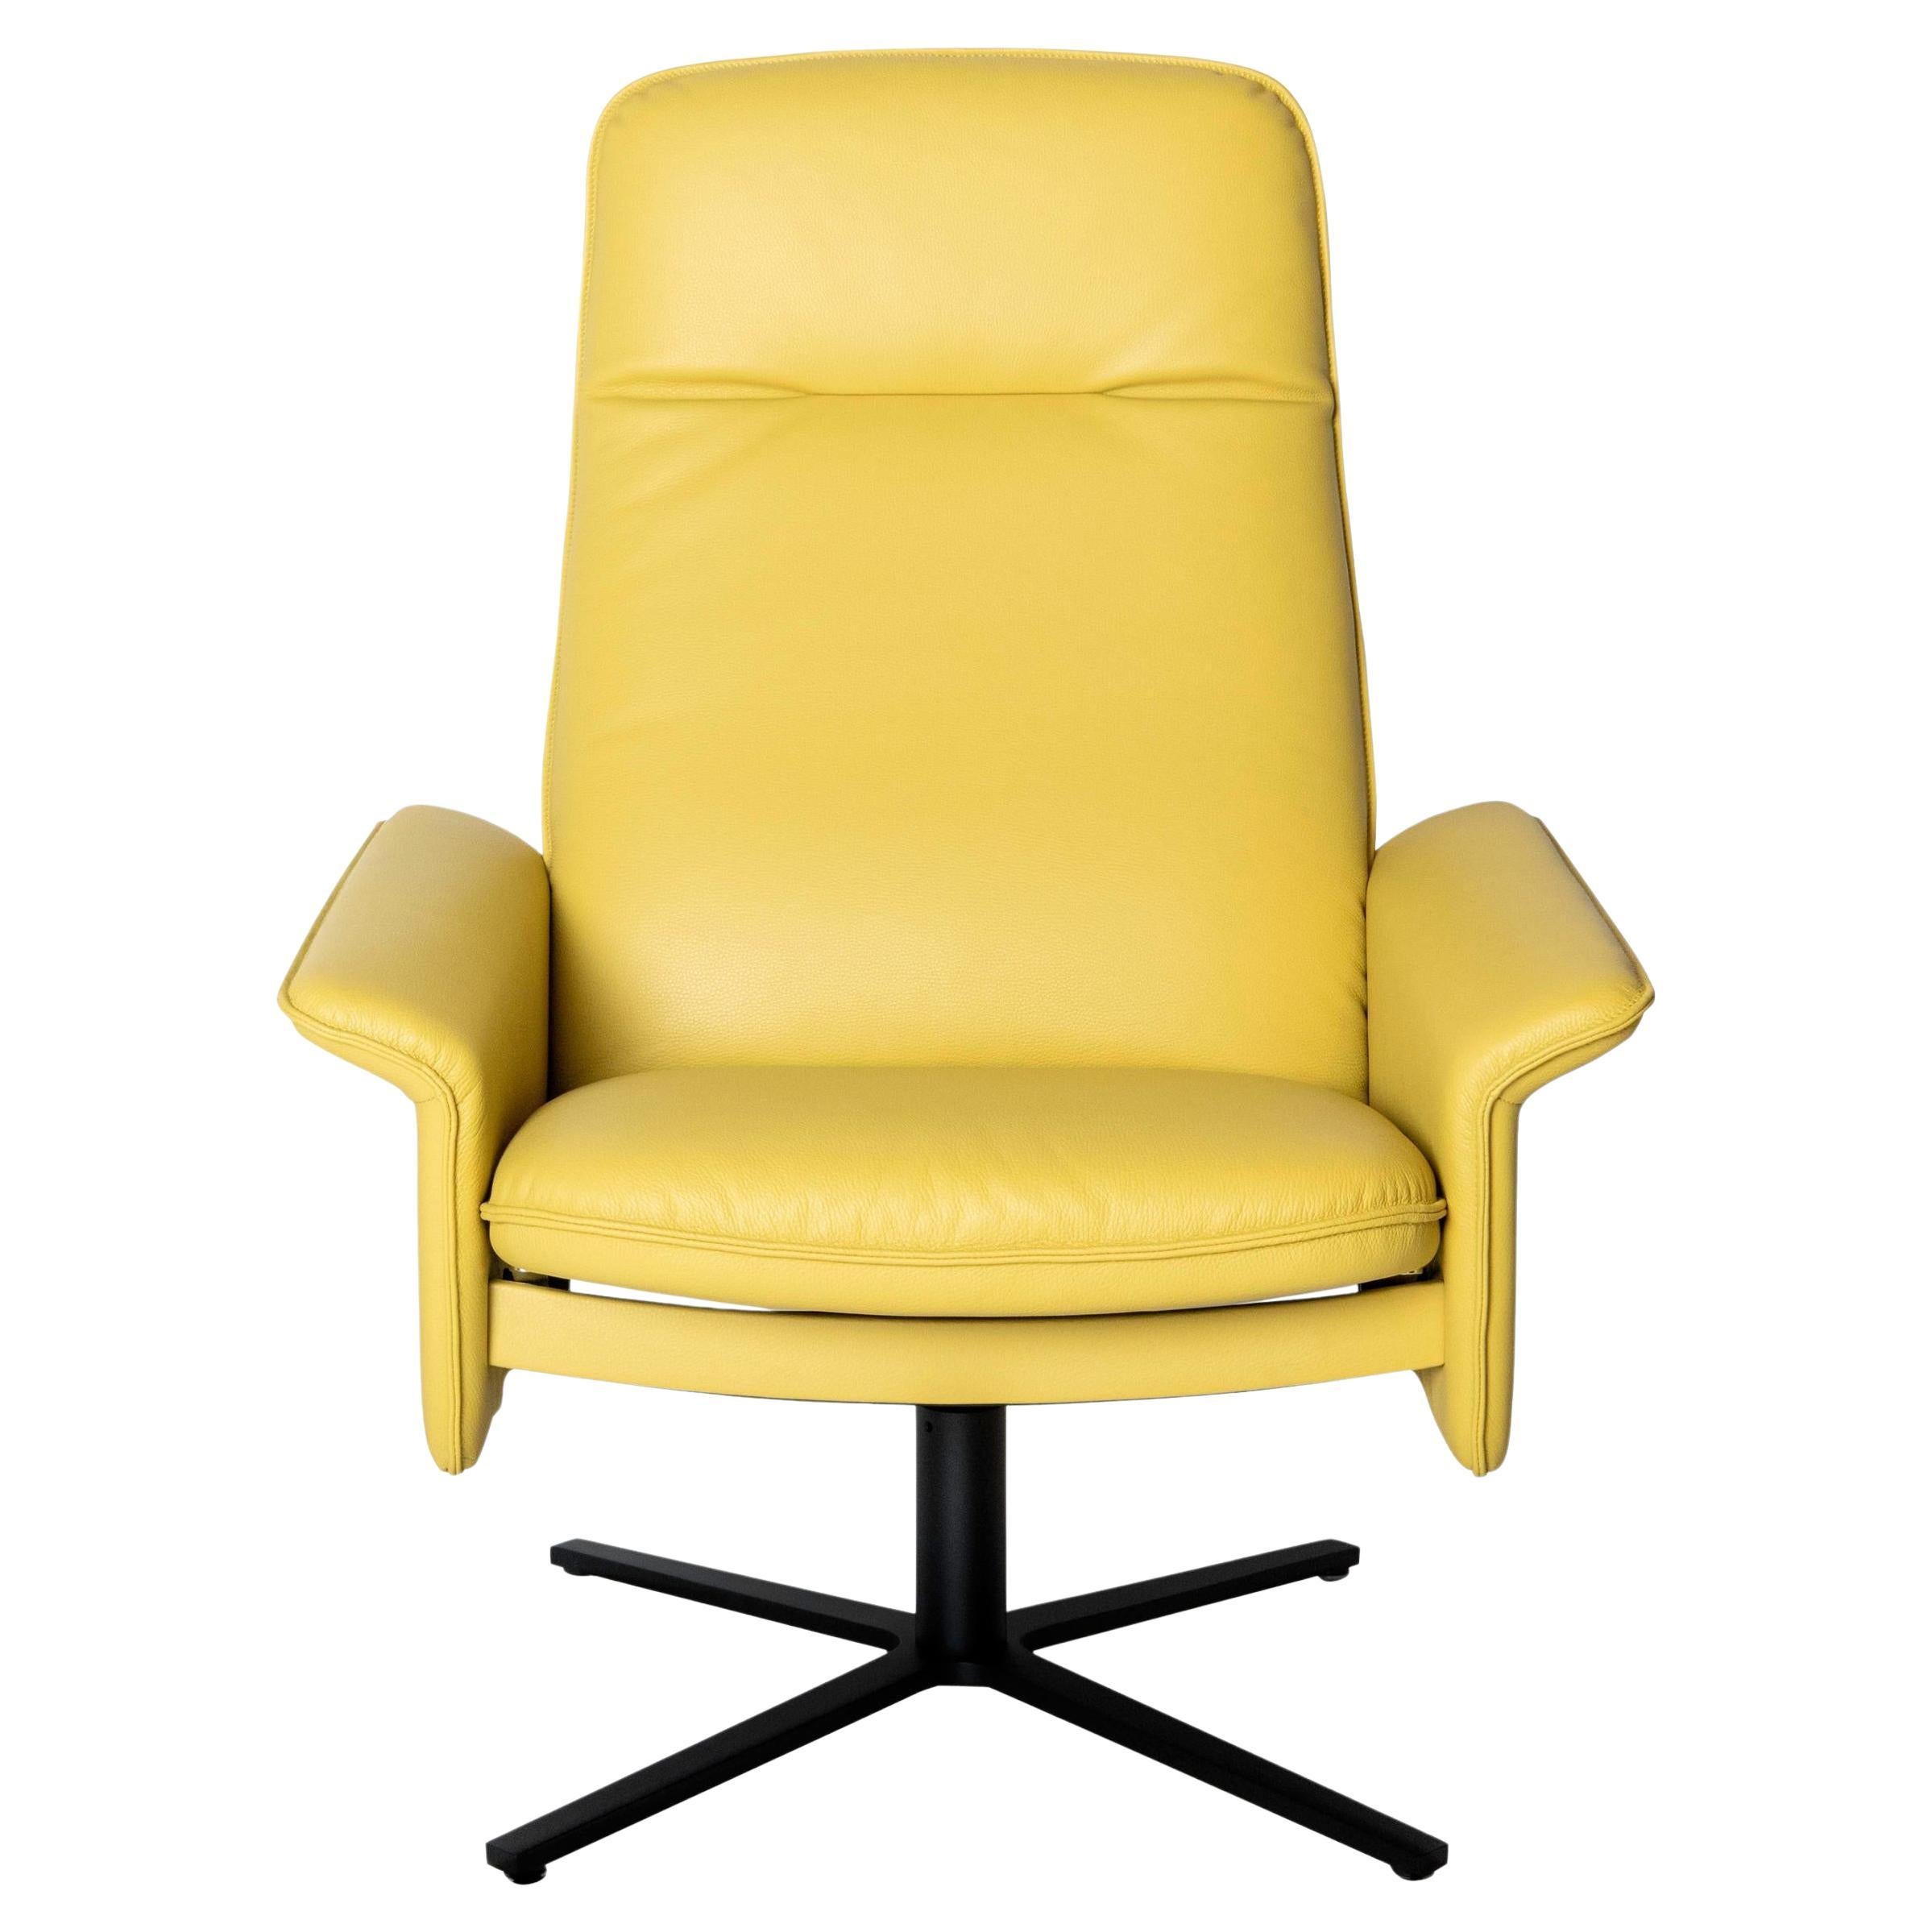 De Sede DS 55 Stuhl mit hoher Rückenlehne und gelber Lederpolsterung, De Sede Design Team im Angebot